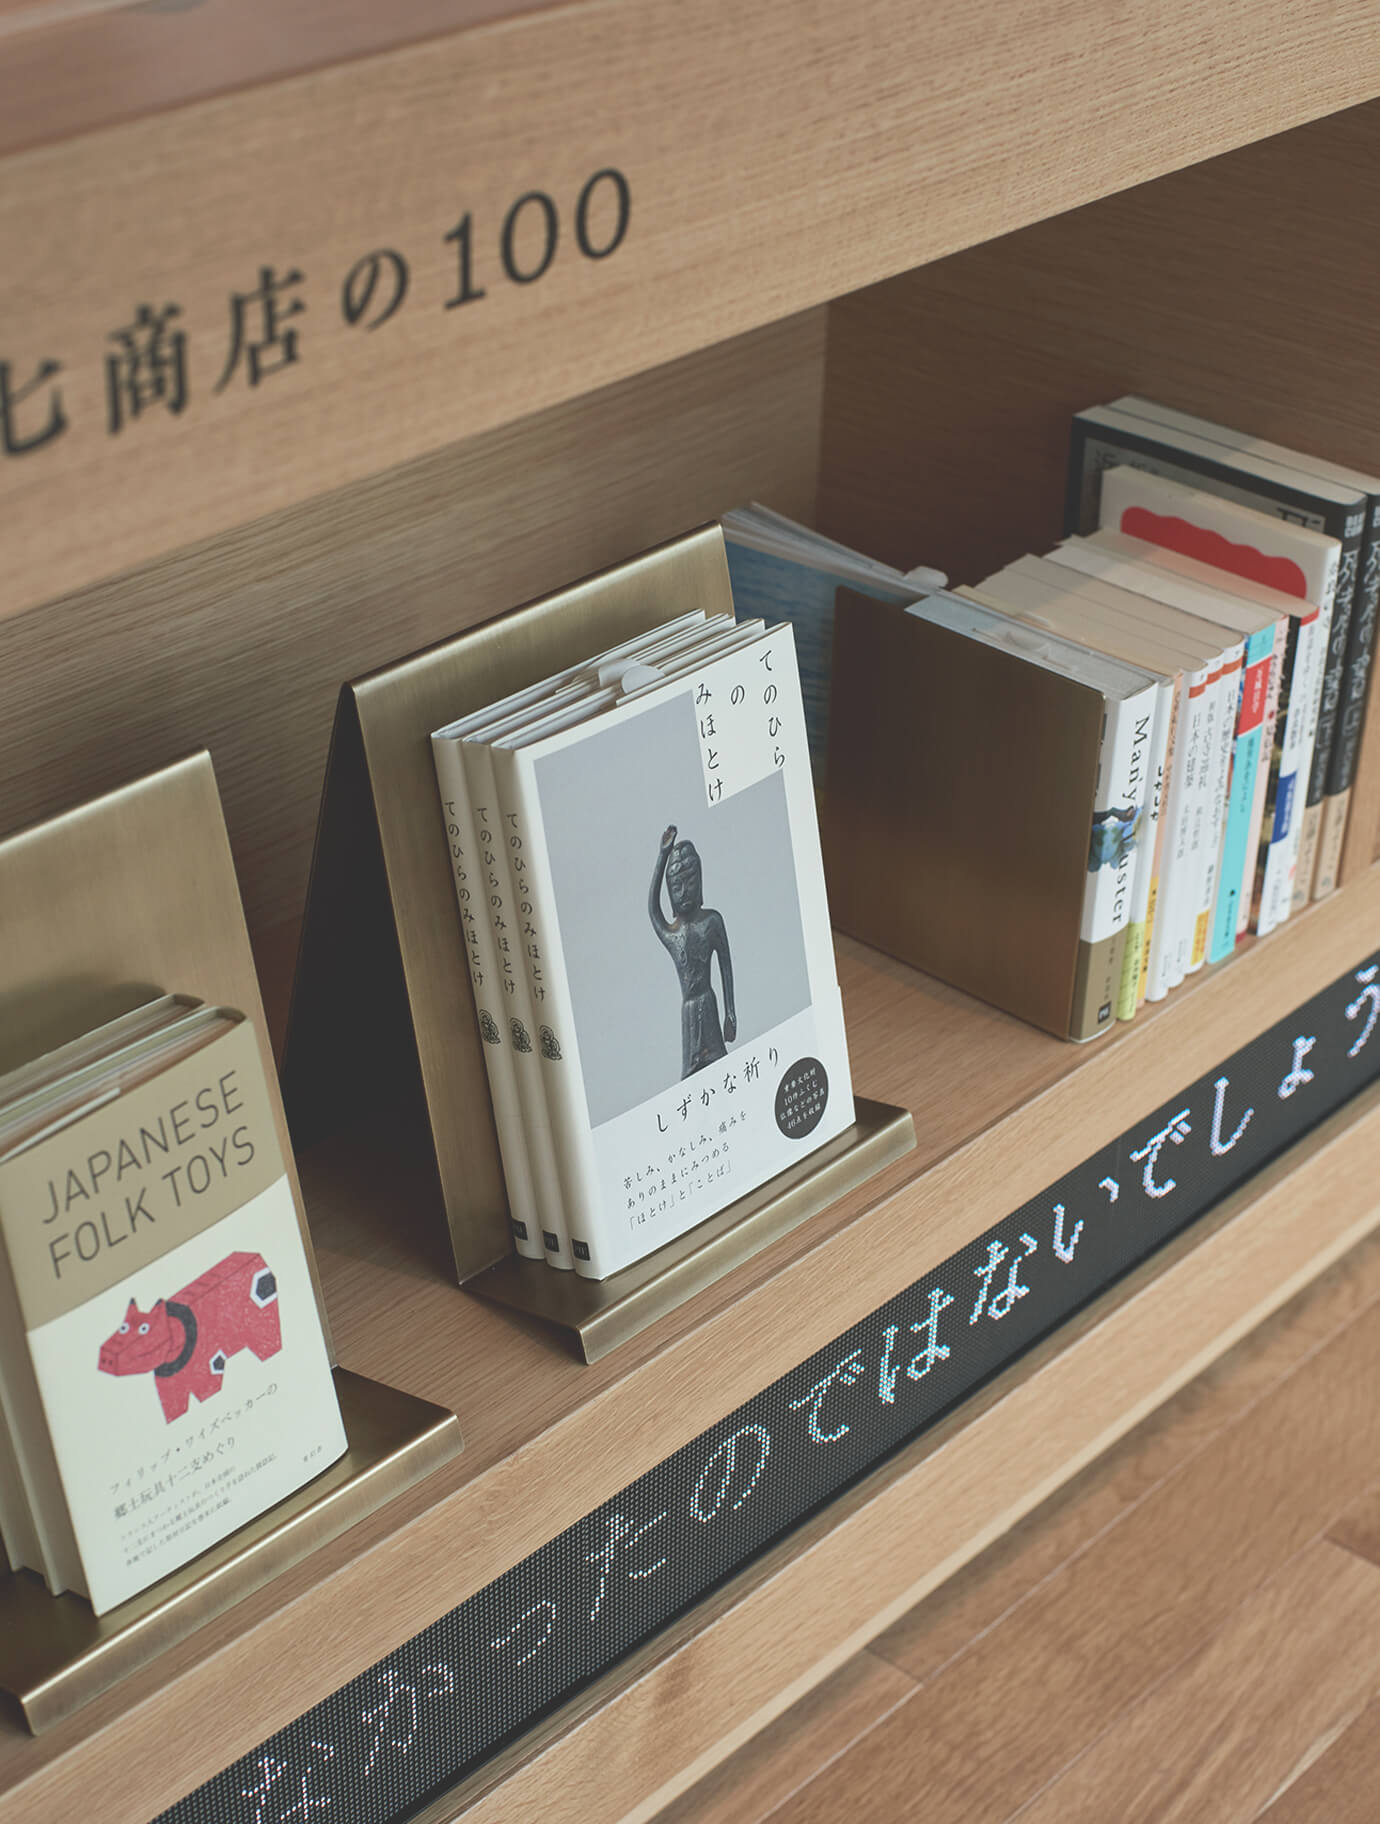 奈良を楽しむ1冊を選ぶ「中川政七商店の100」 イメージ